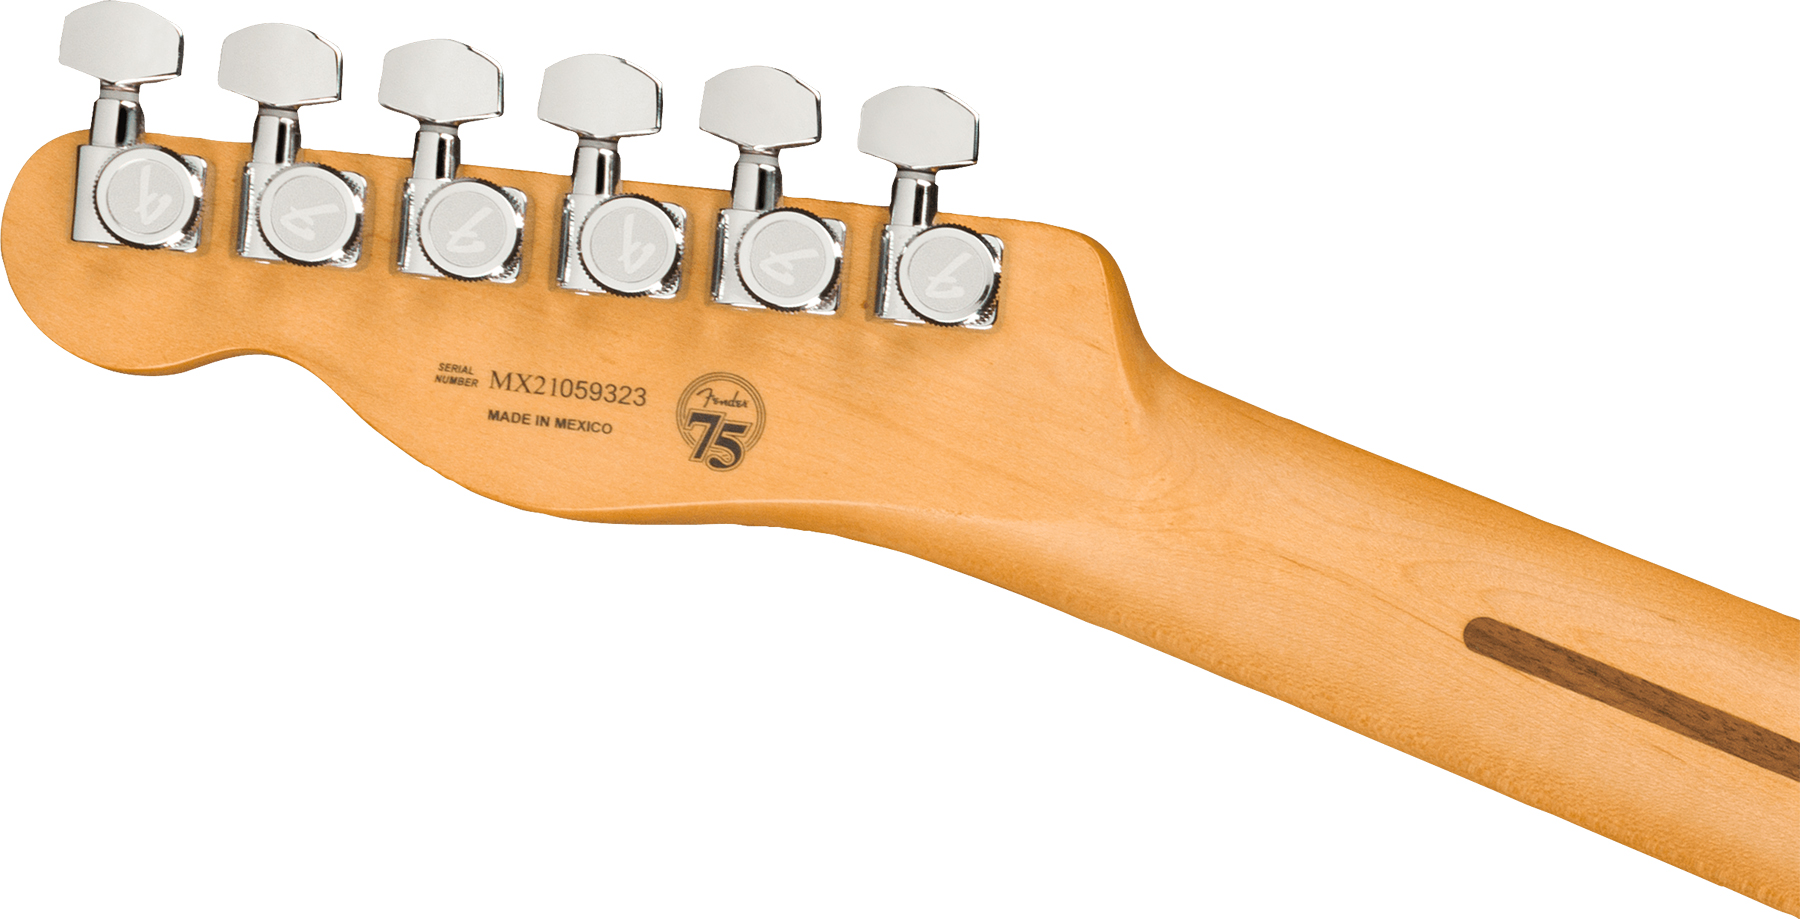 Fender Tele Player Plus Nashville Mex 3s Ht Mn - 3-color Sunburst - Guitarra eléctrica con forma de tel - Variation 3